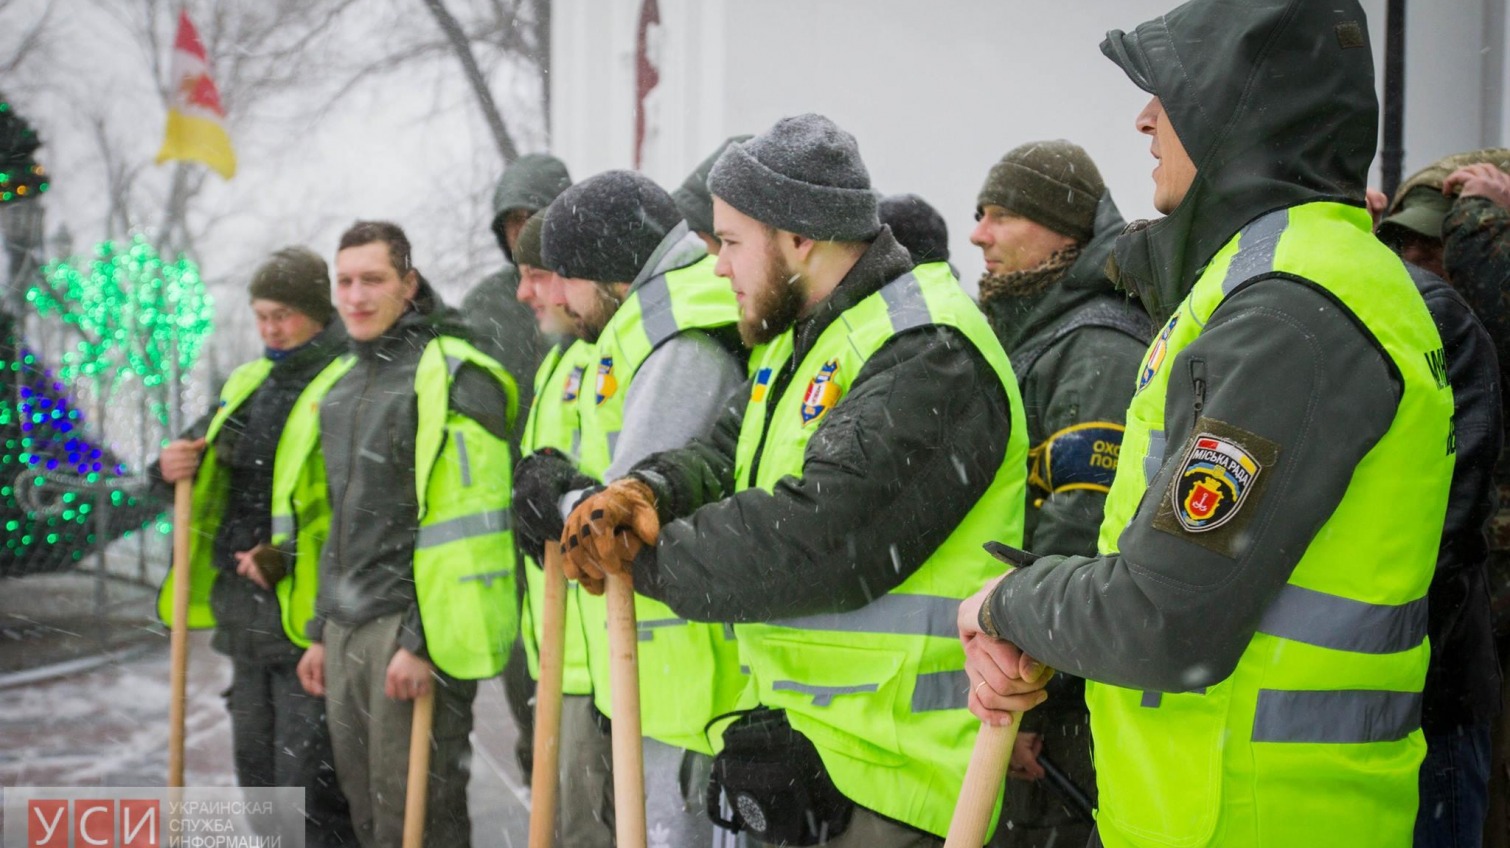 Одесская «Муниципальная охрана» во время снегопада патрулирует город с лопатами (фото) «фото»